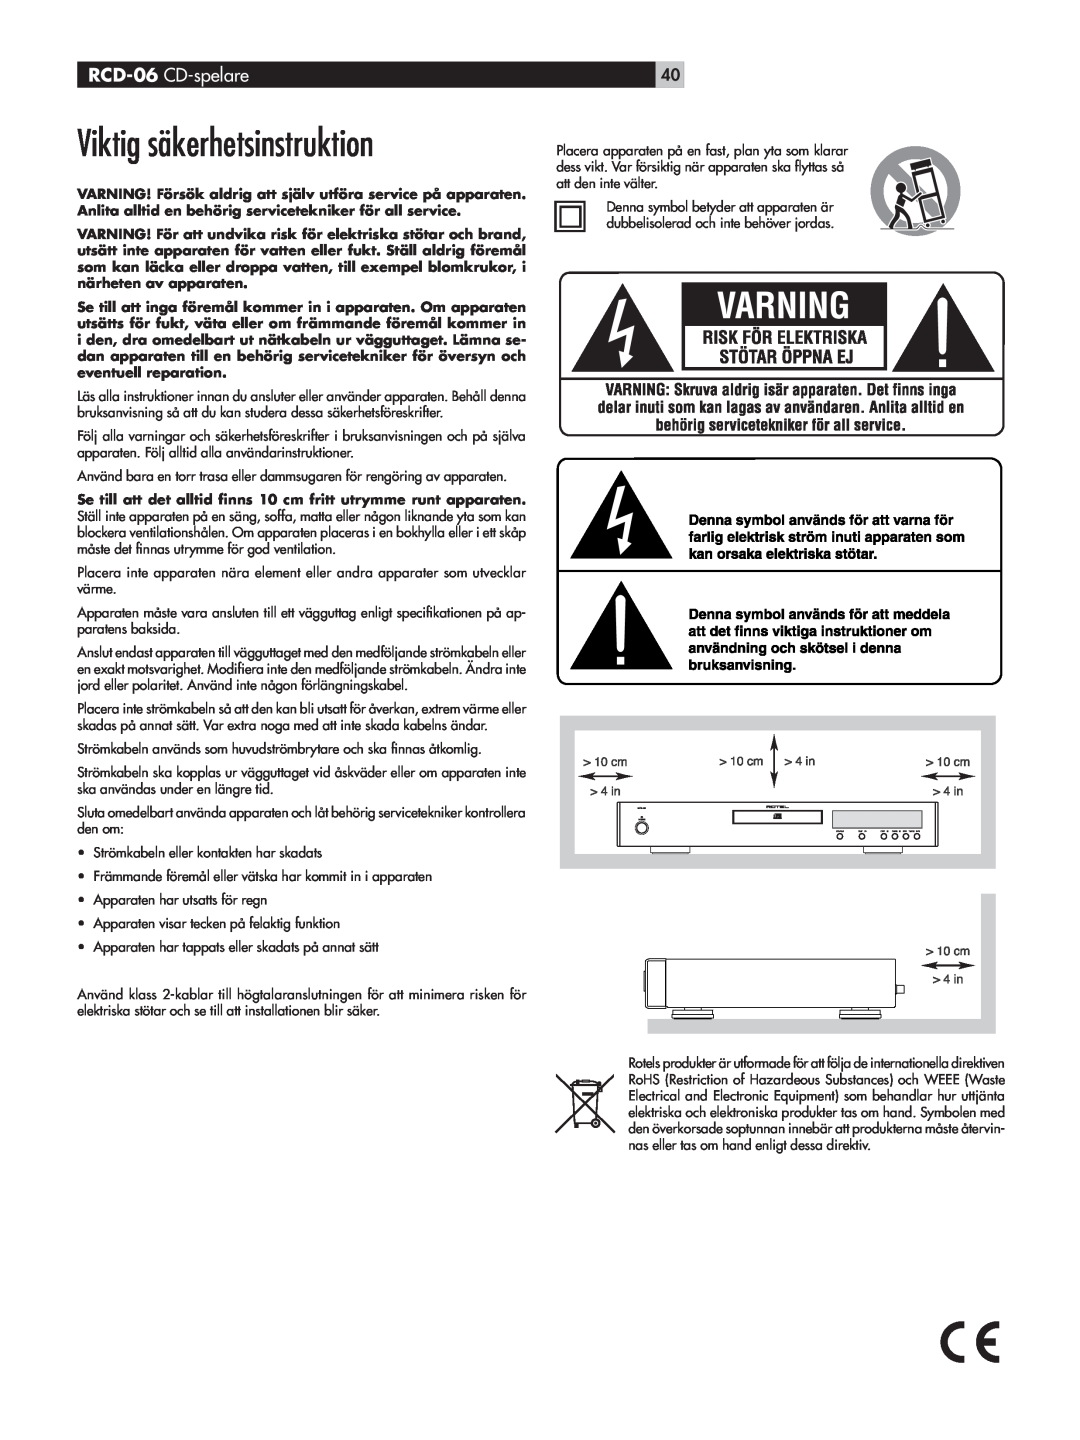 Rotel owner manual Viktig säkerhetsinstruktion, RCD-06 CD-spelare 